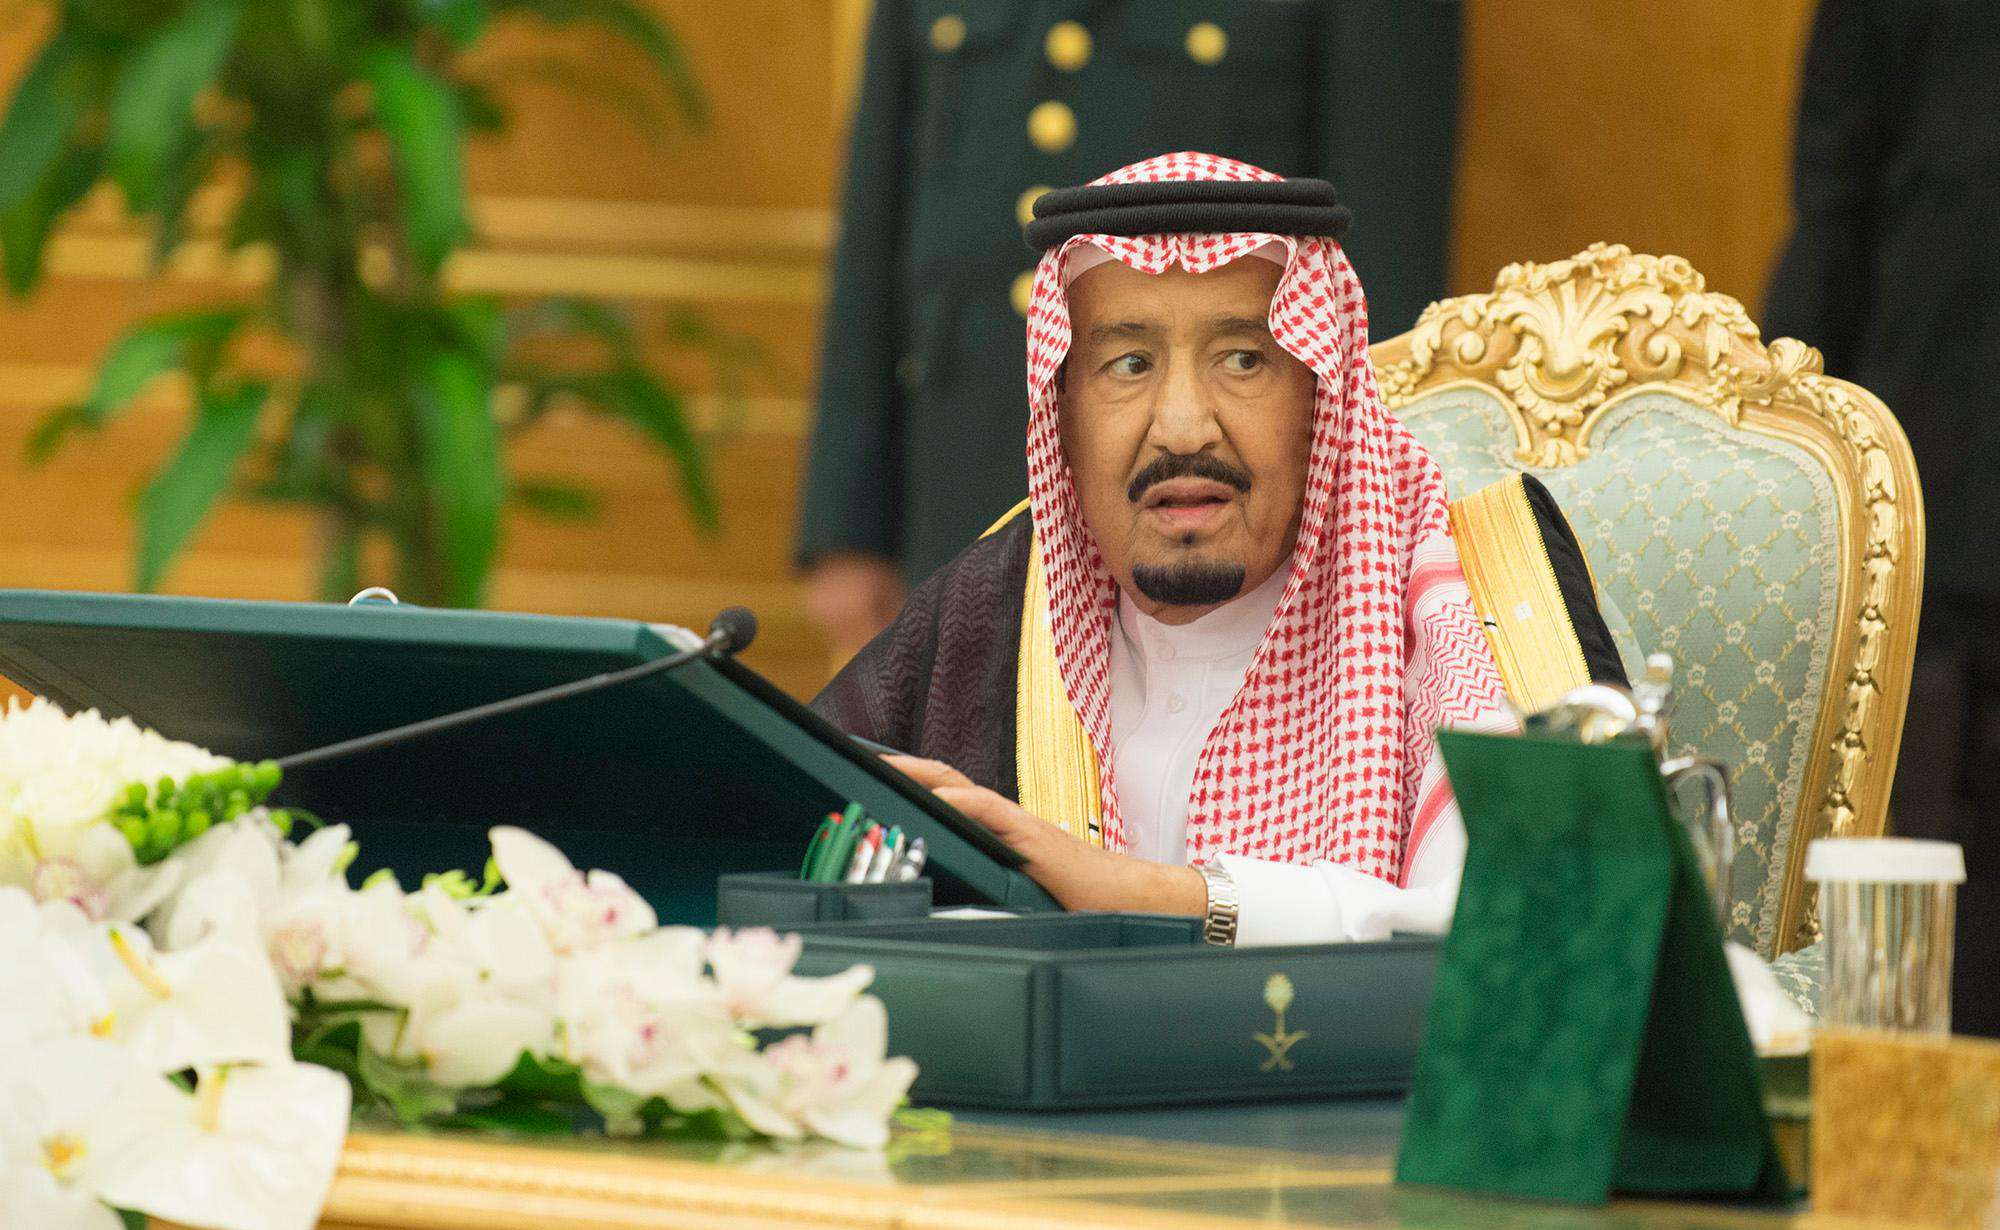 ثقة ملكية في القضاء السعودي